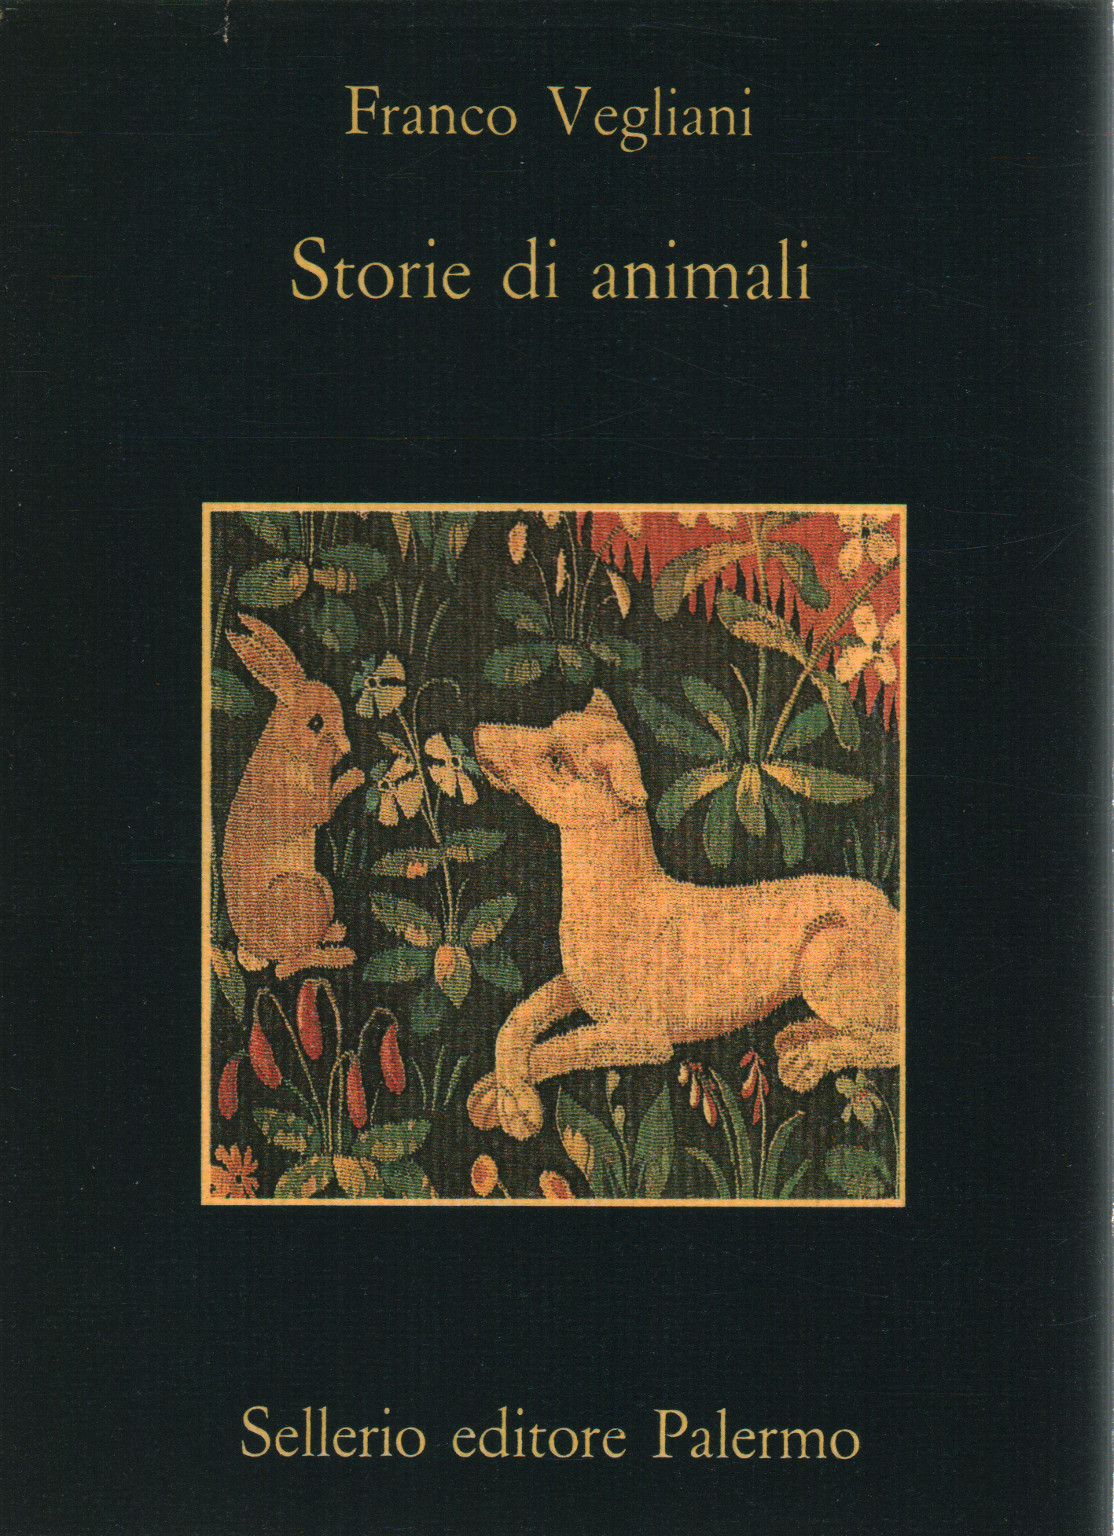 Historias de animales